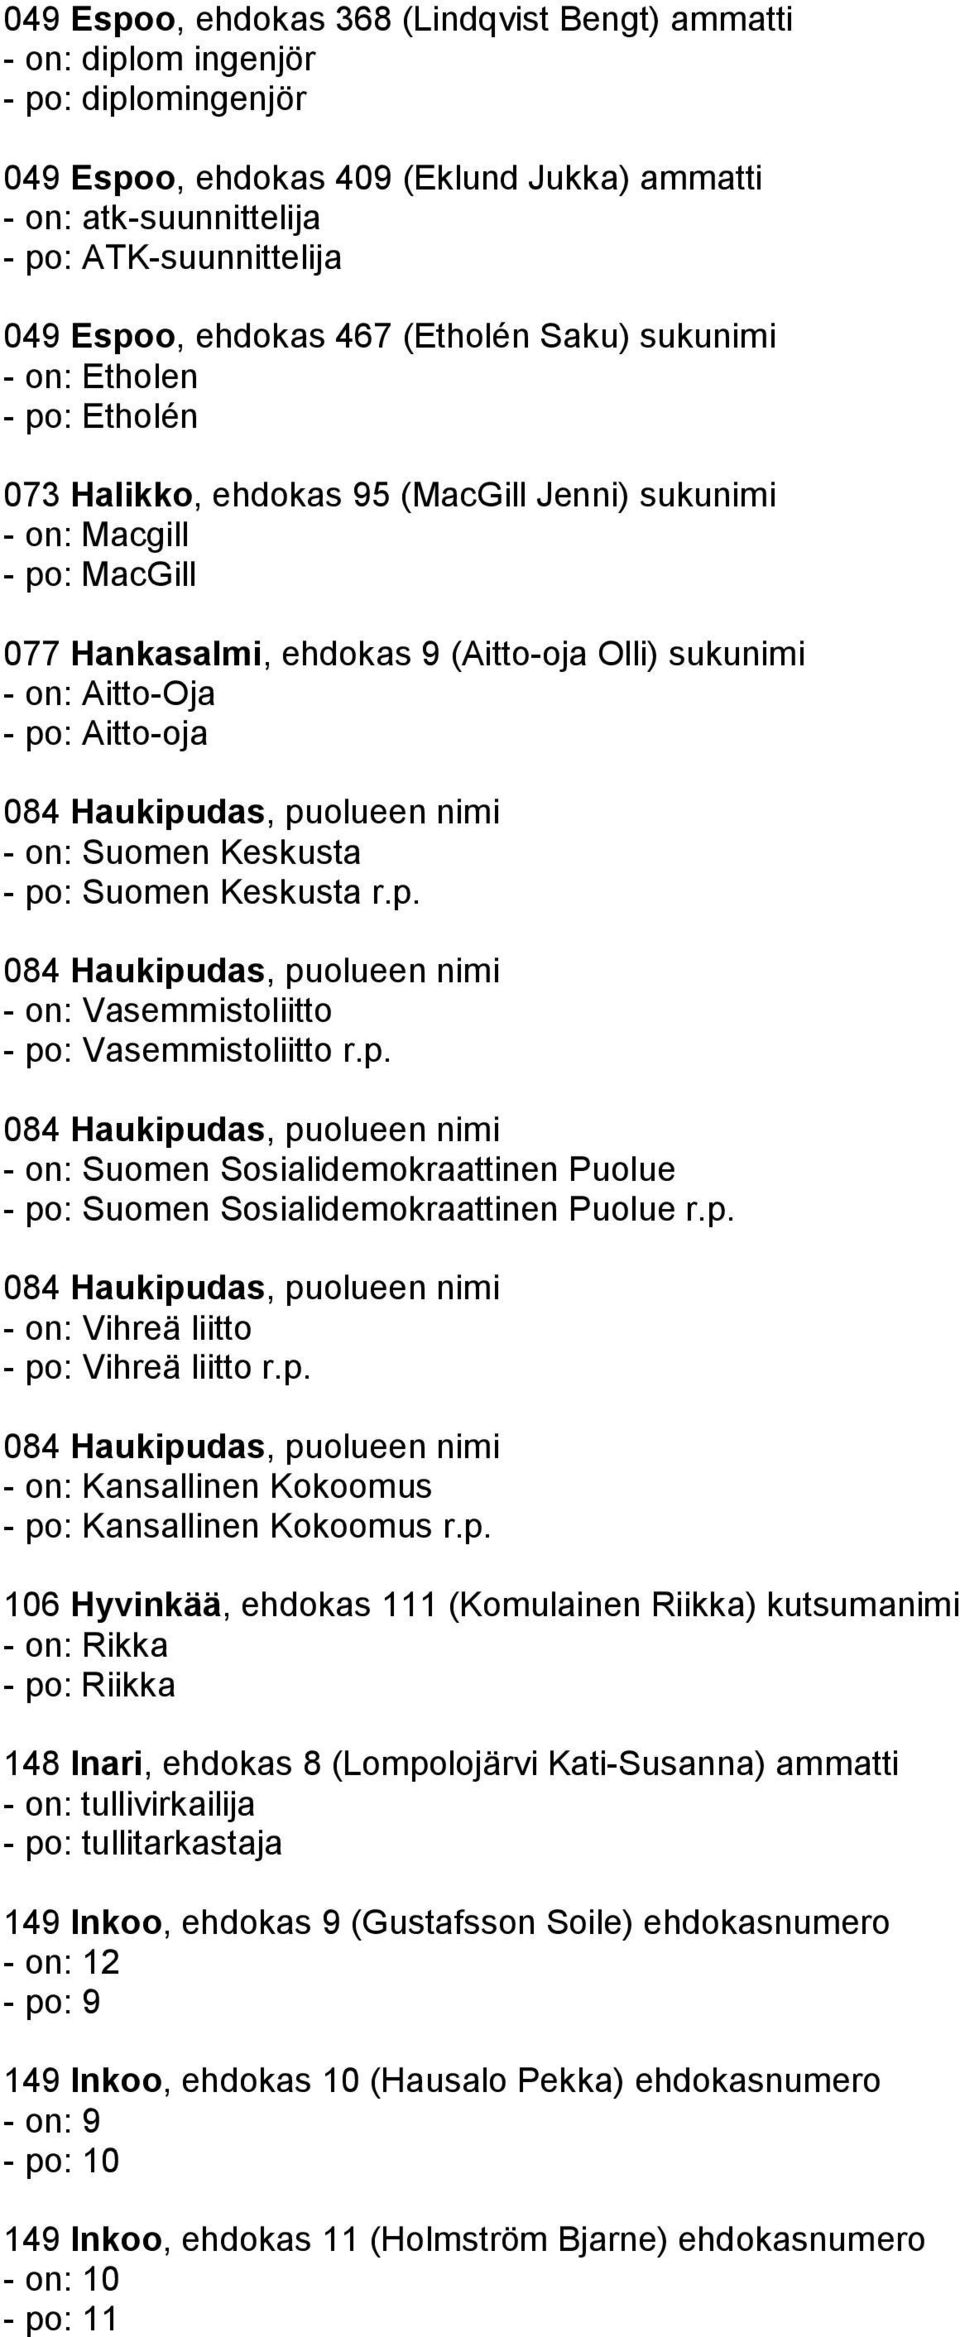 Aitto-Oja - po: Aitto-oja - on: Suomen Keskusta - po: Suomen Keskusta r.p. - on: Vasemmistoliitto - po: Vasemmistoliitto r.p. - on: Suomen Sosialidemokraattinen Puolue - po: Suomen Sosialidemokraattinen Puolue r.